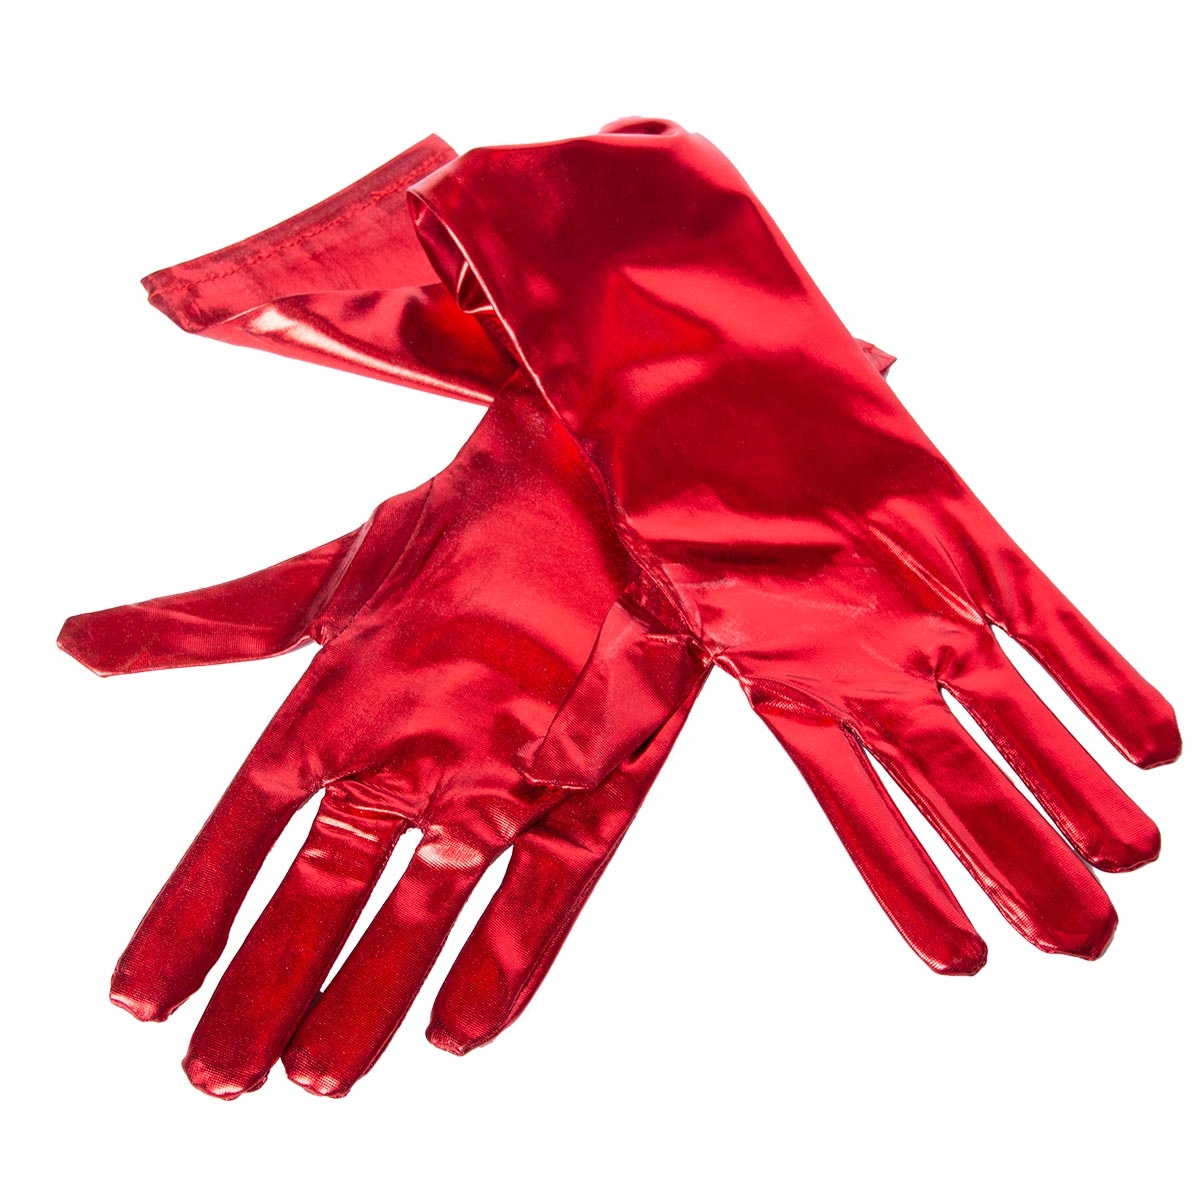 Handskar metallic röd